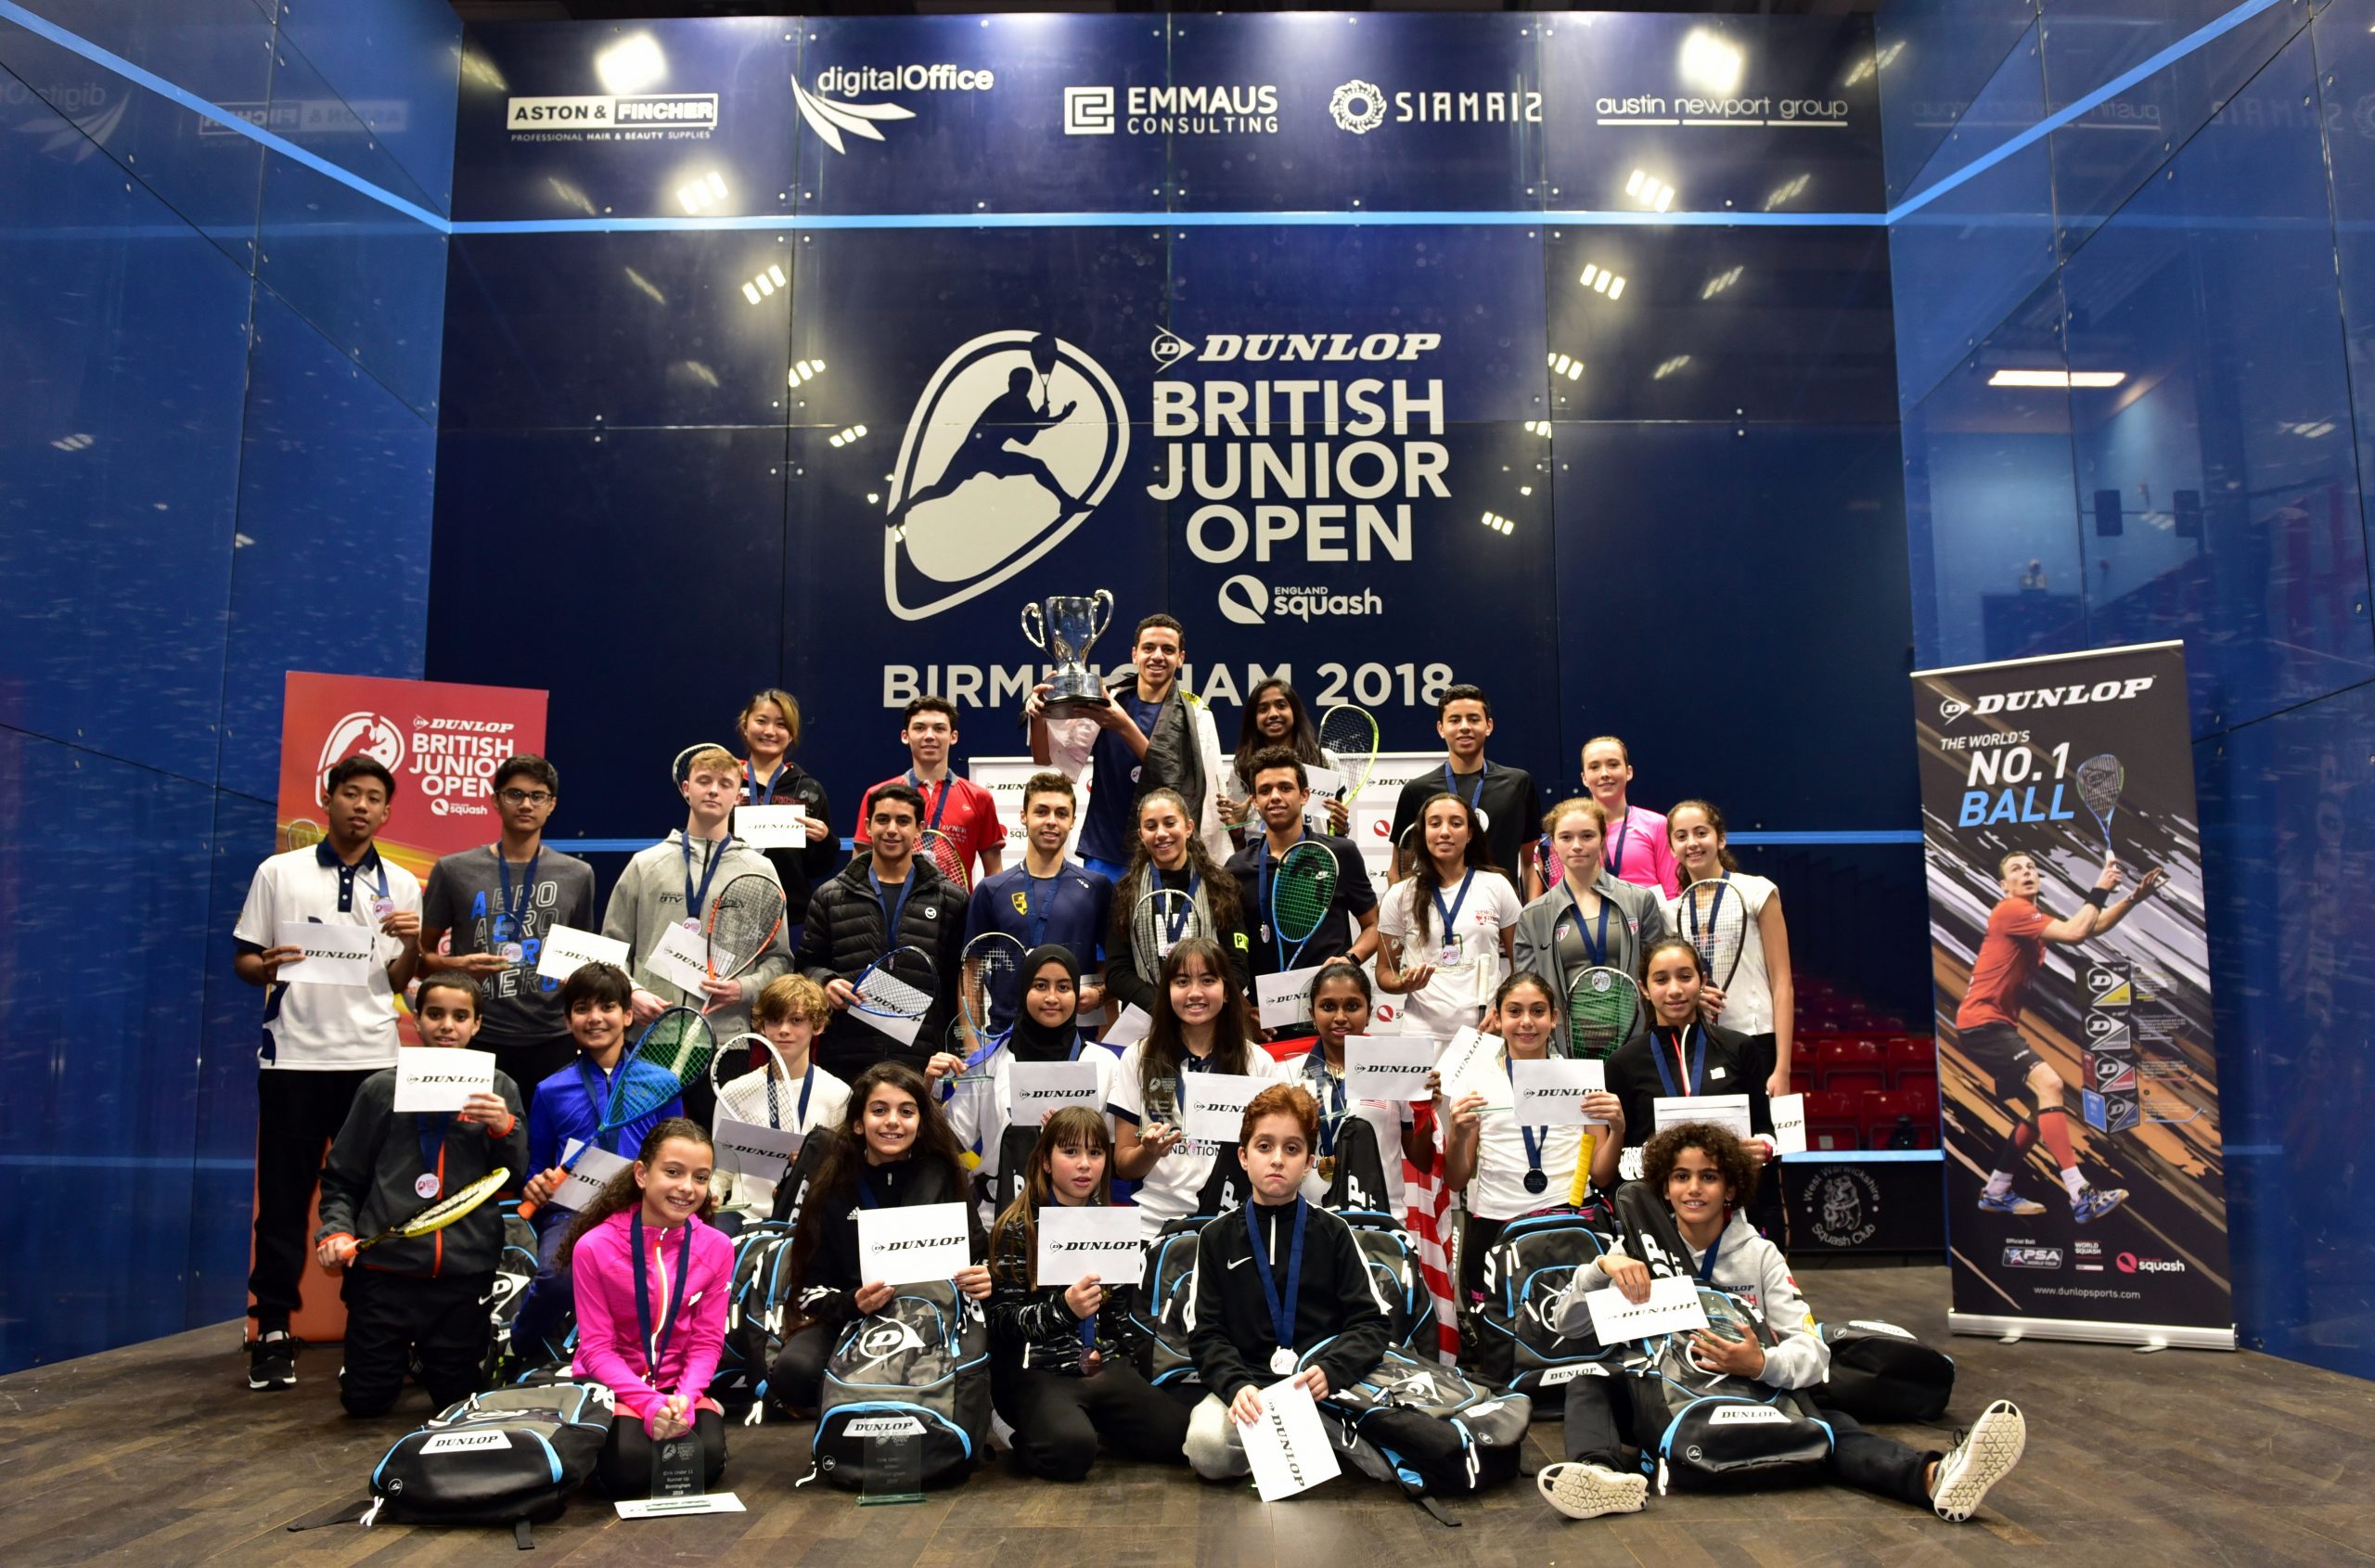 Dunlop British Junior Open